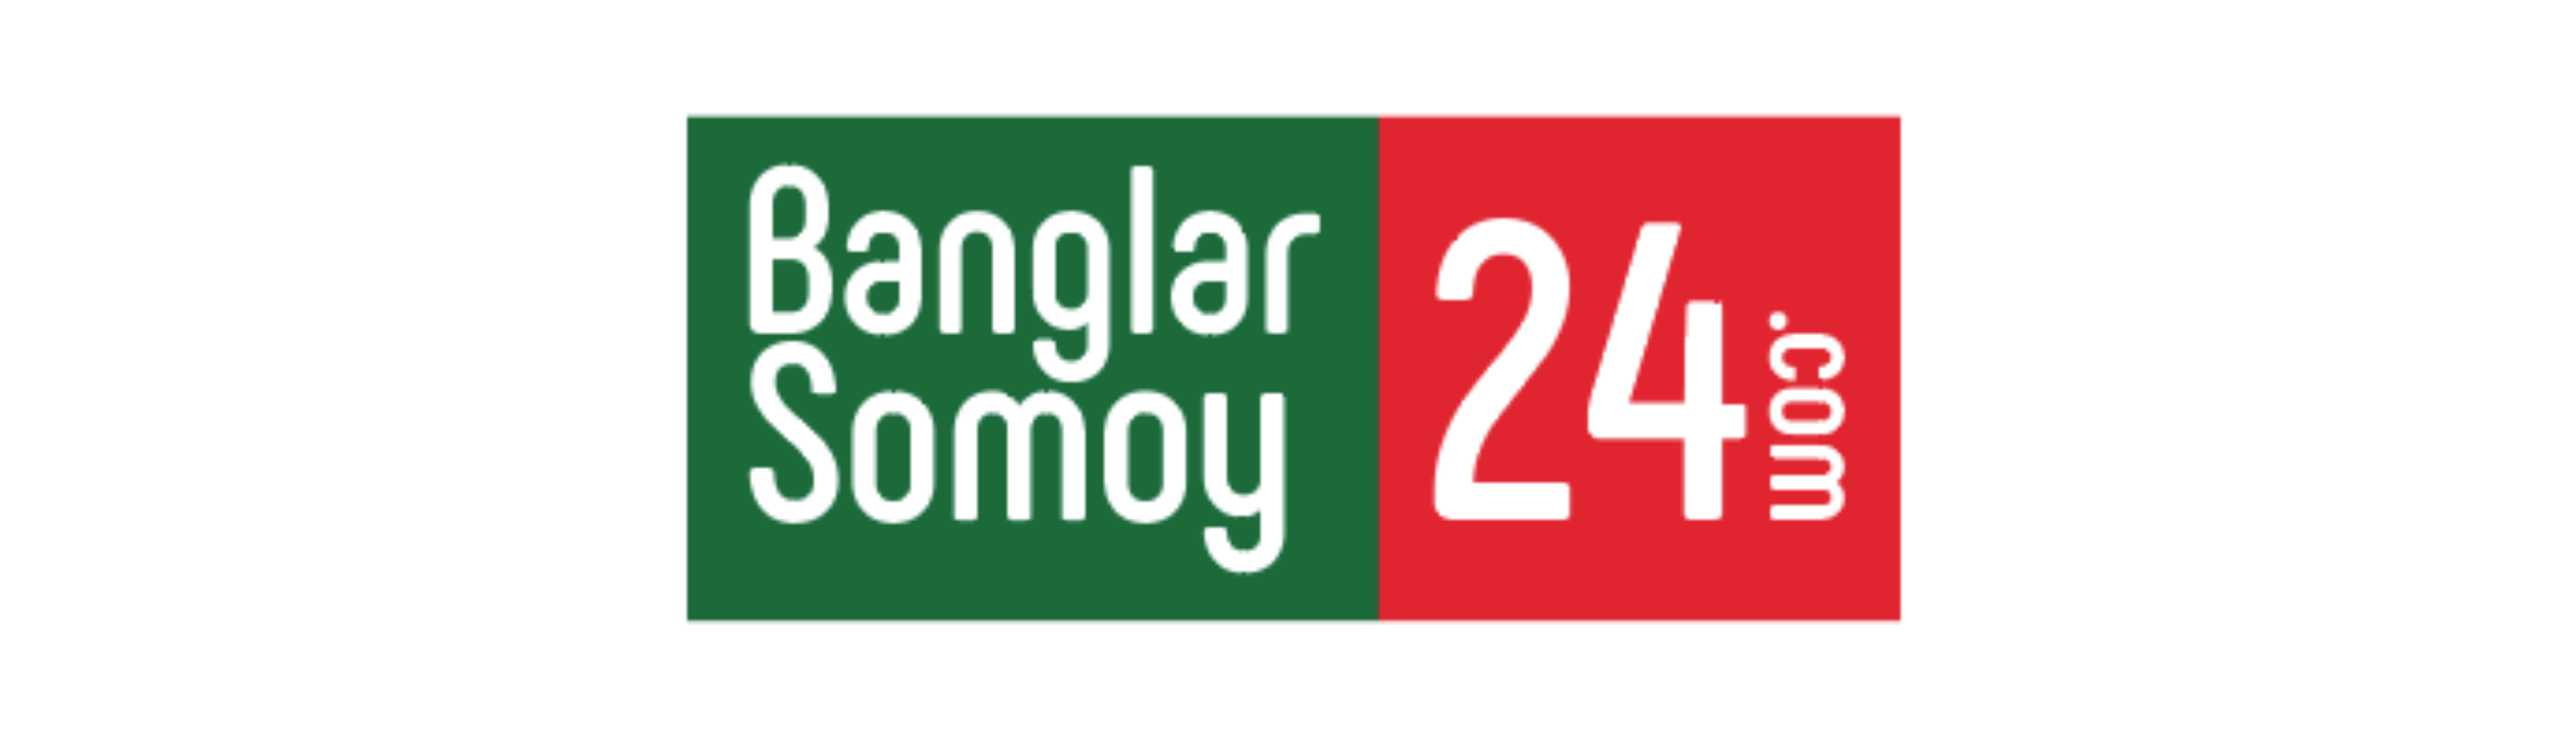 Banglarsomoy24